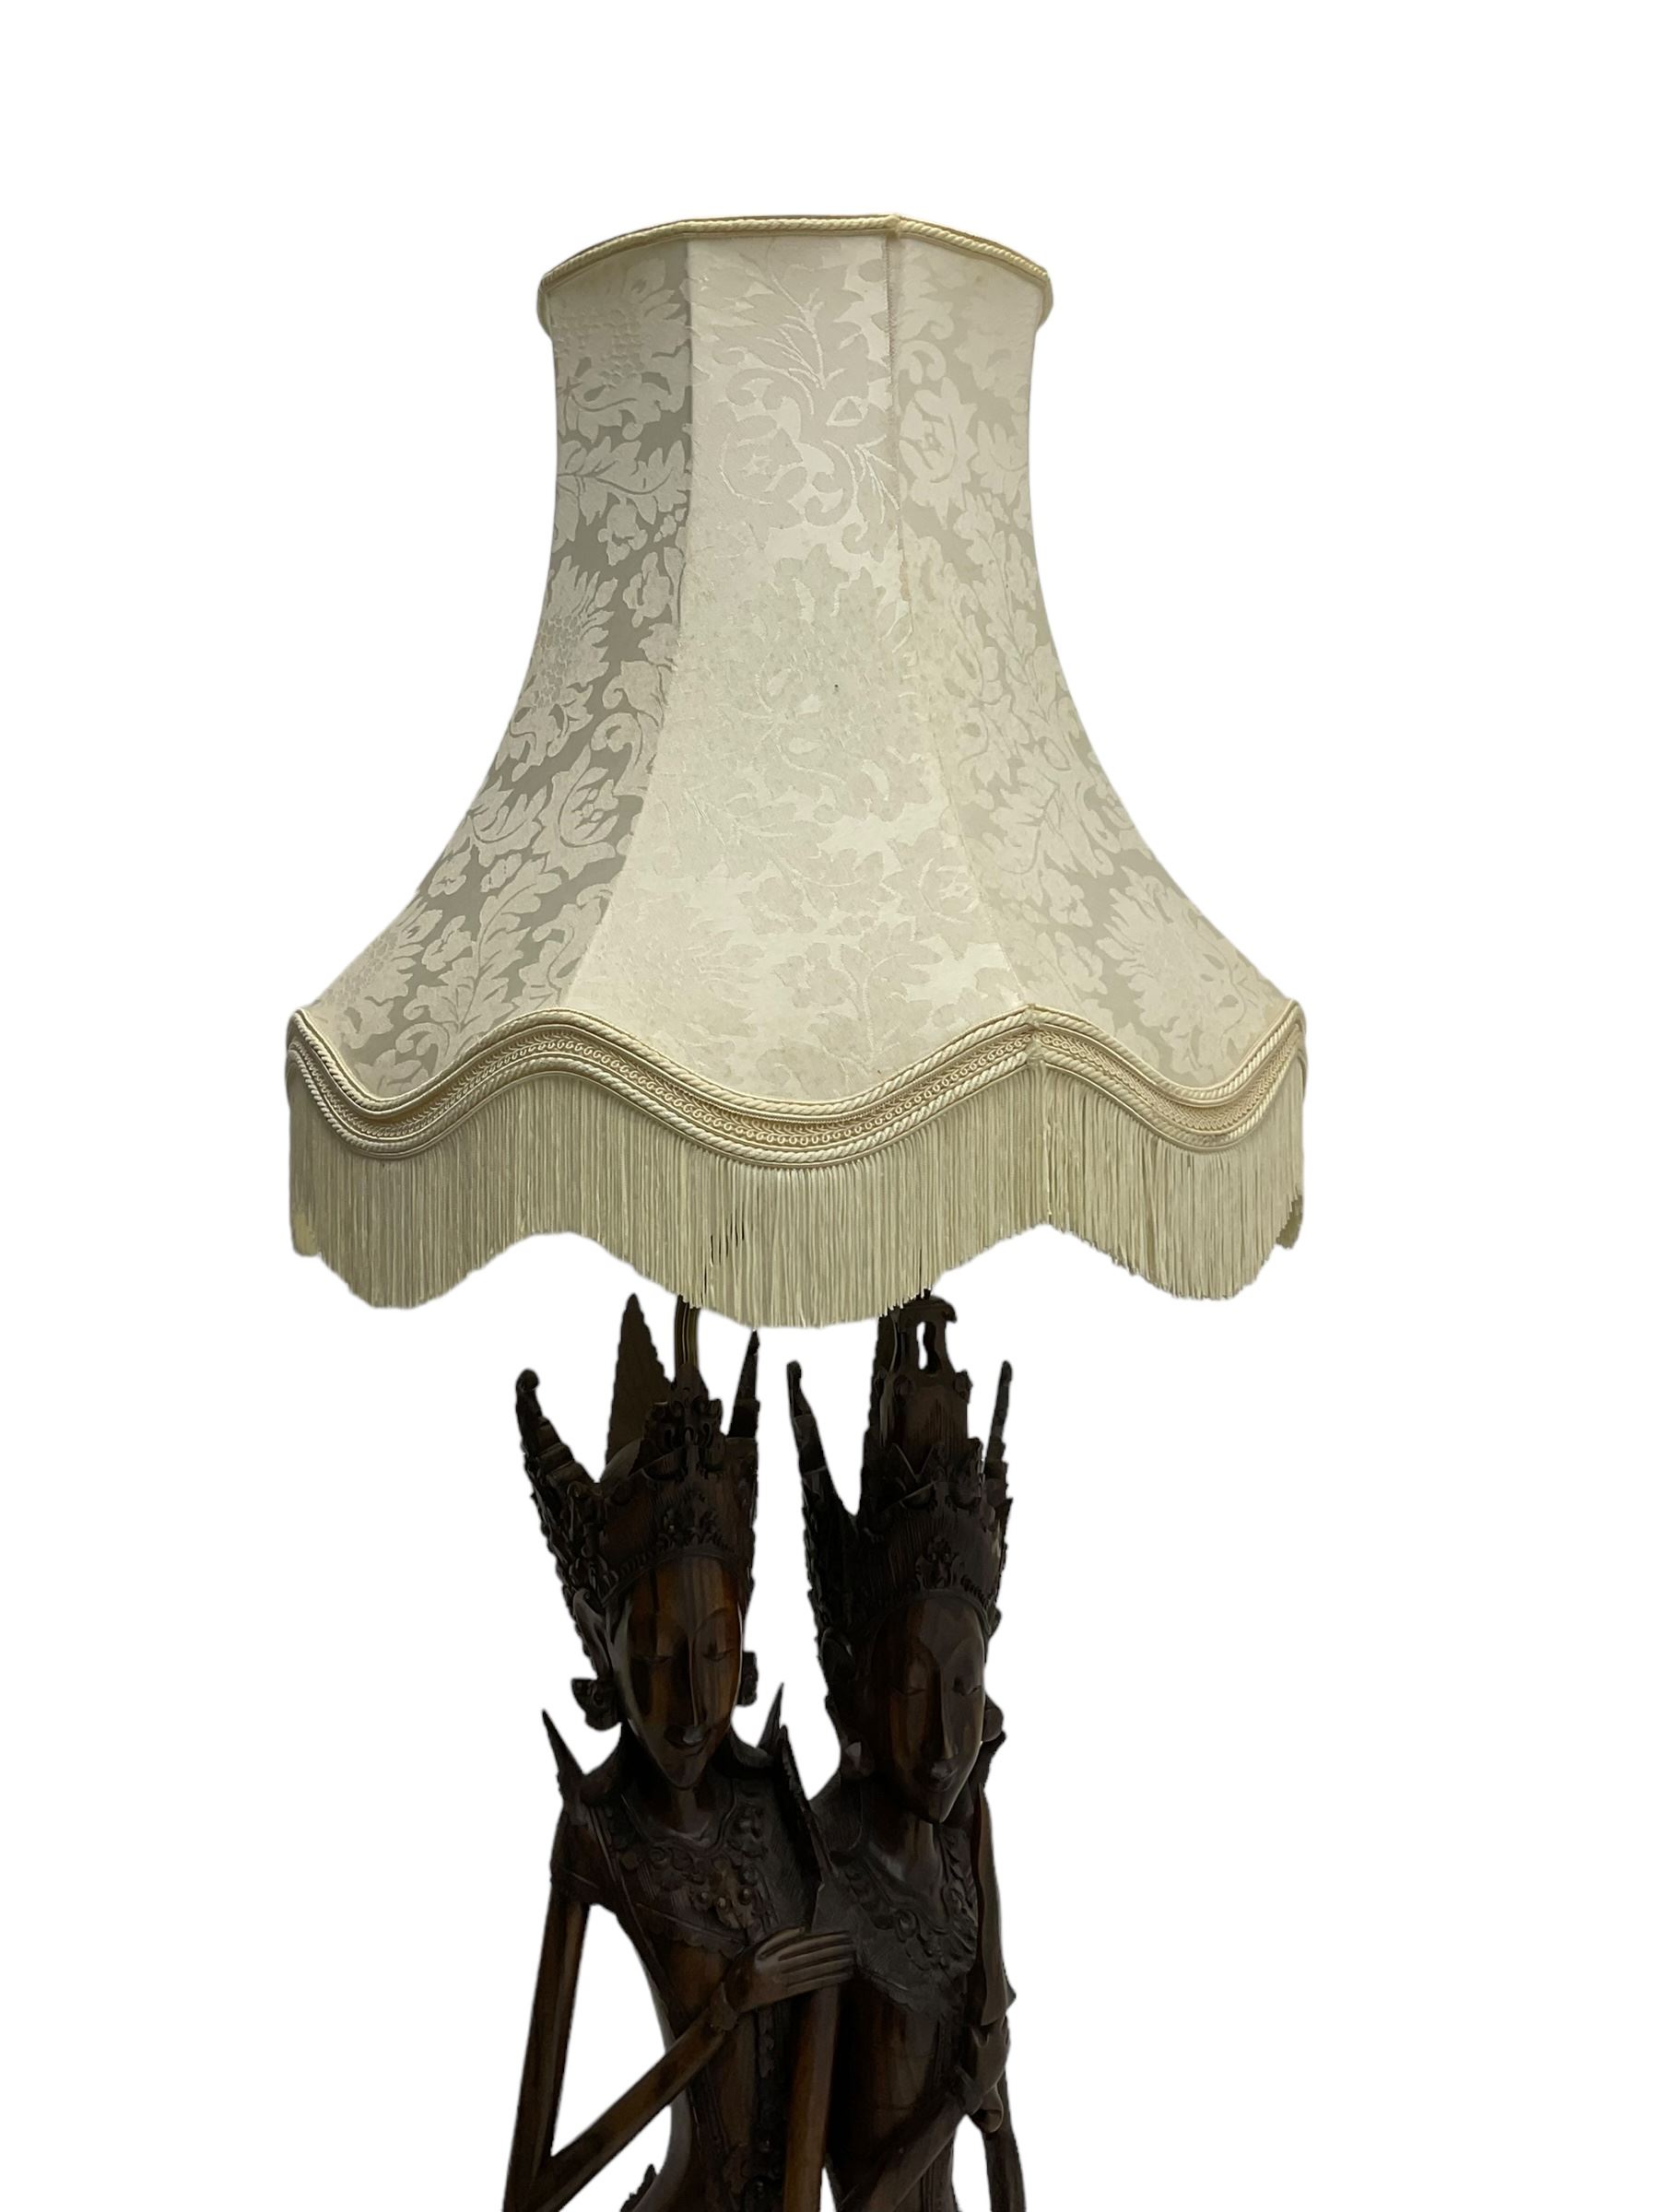 Carved hardwood figural standard lamp - Image 3 of 5